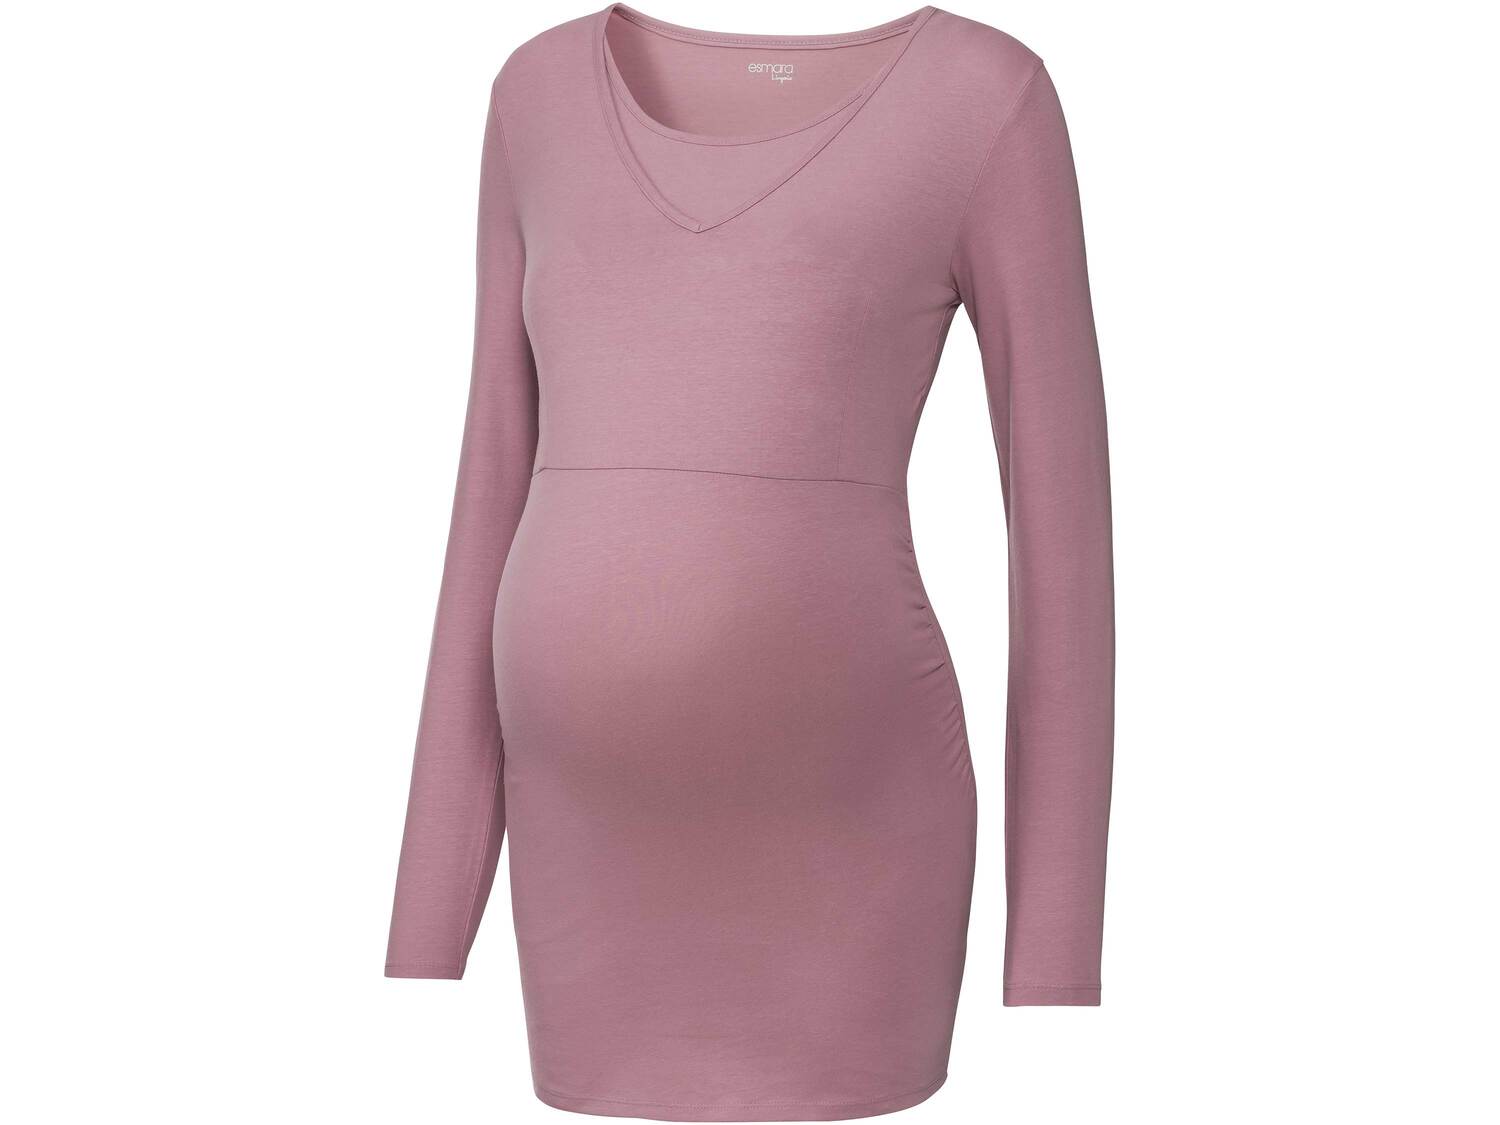 Piżama ciążowa z biobawełną Esmara, cena 39,99 PLN 
- rozmiary: XS-L
- wysoka ...